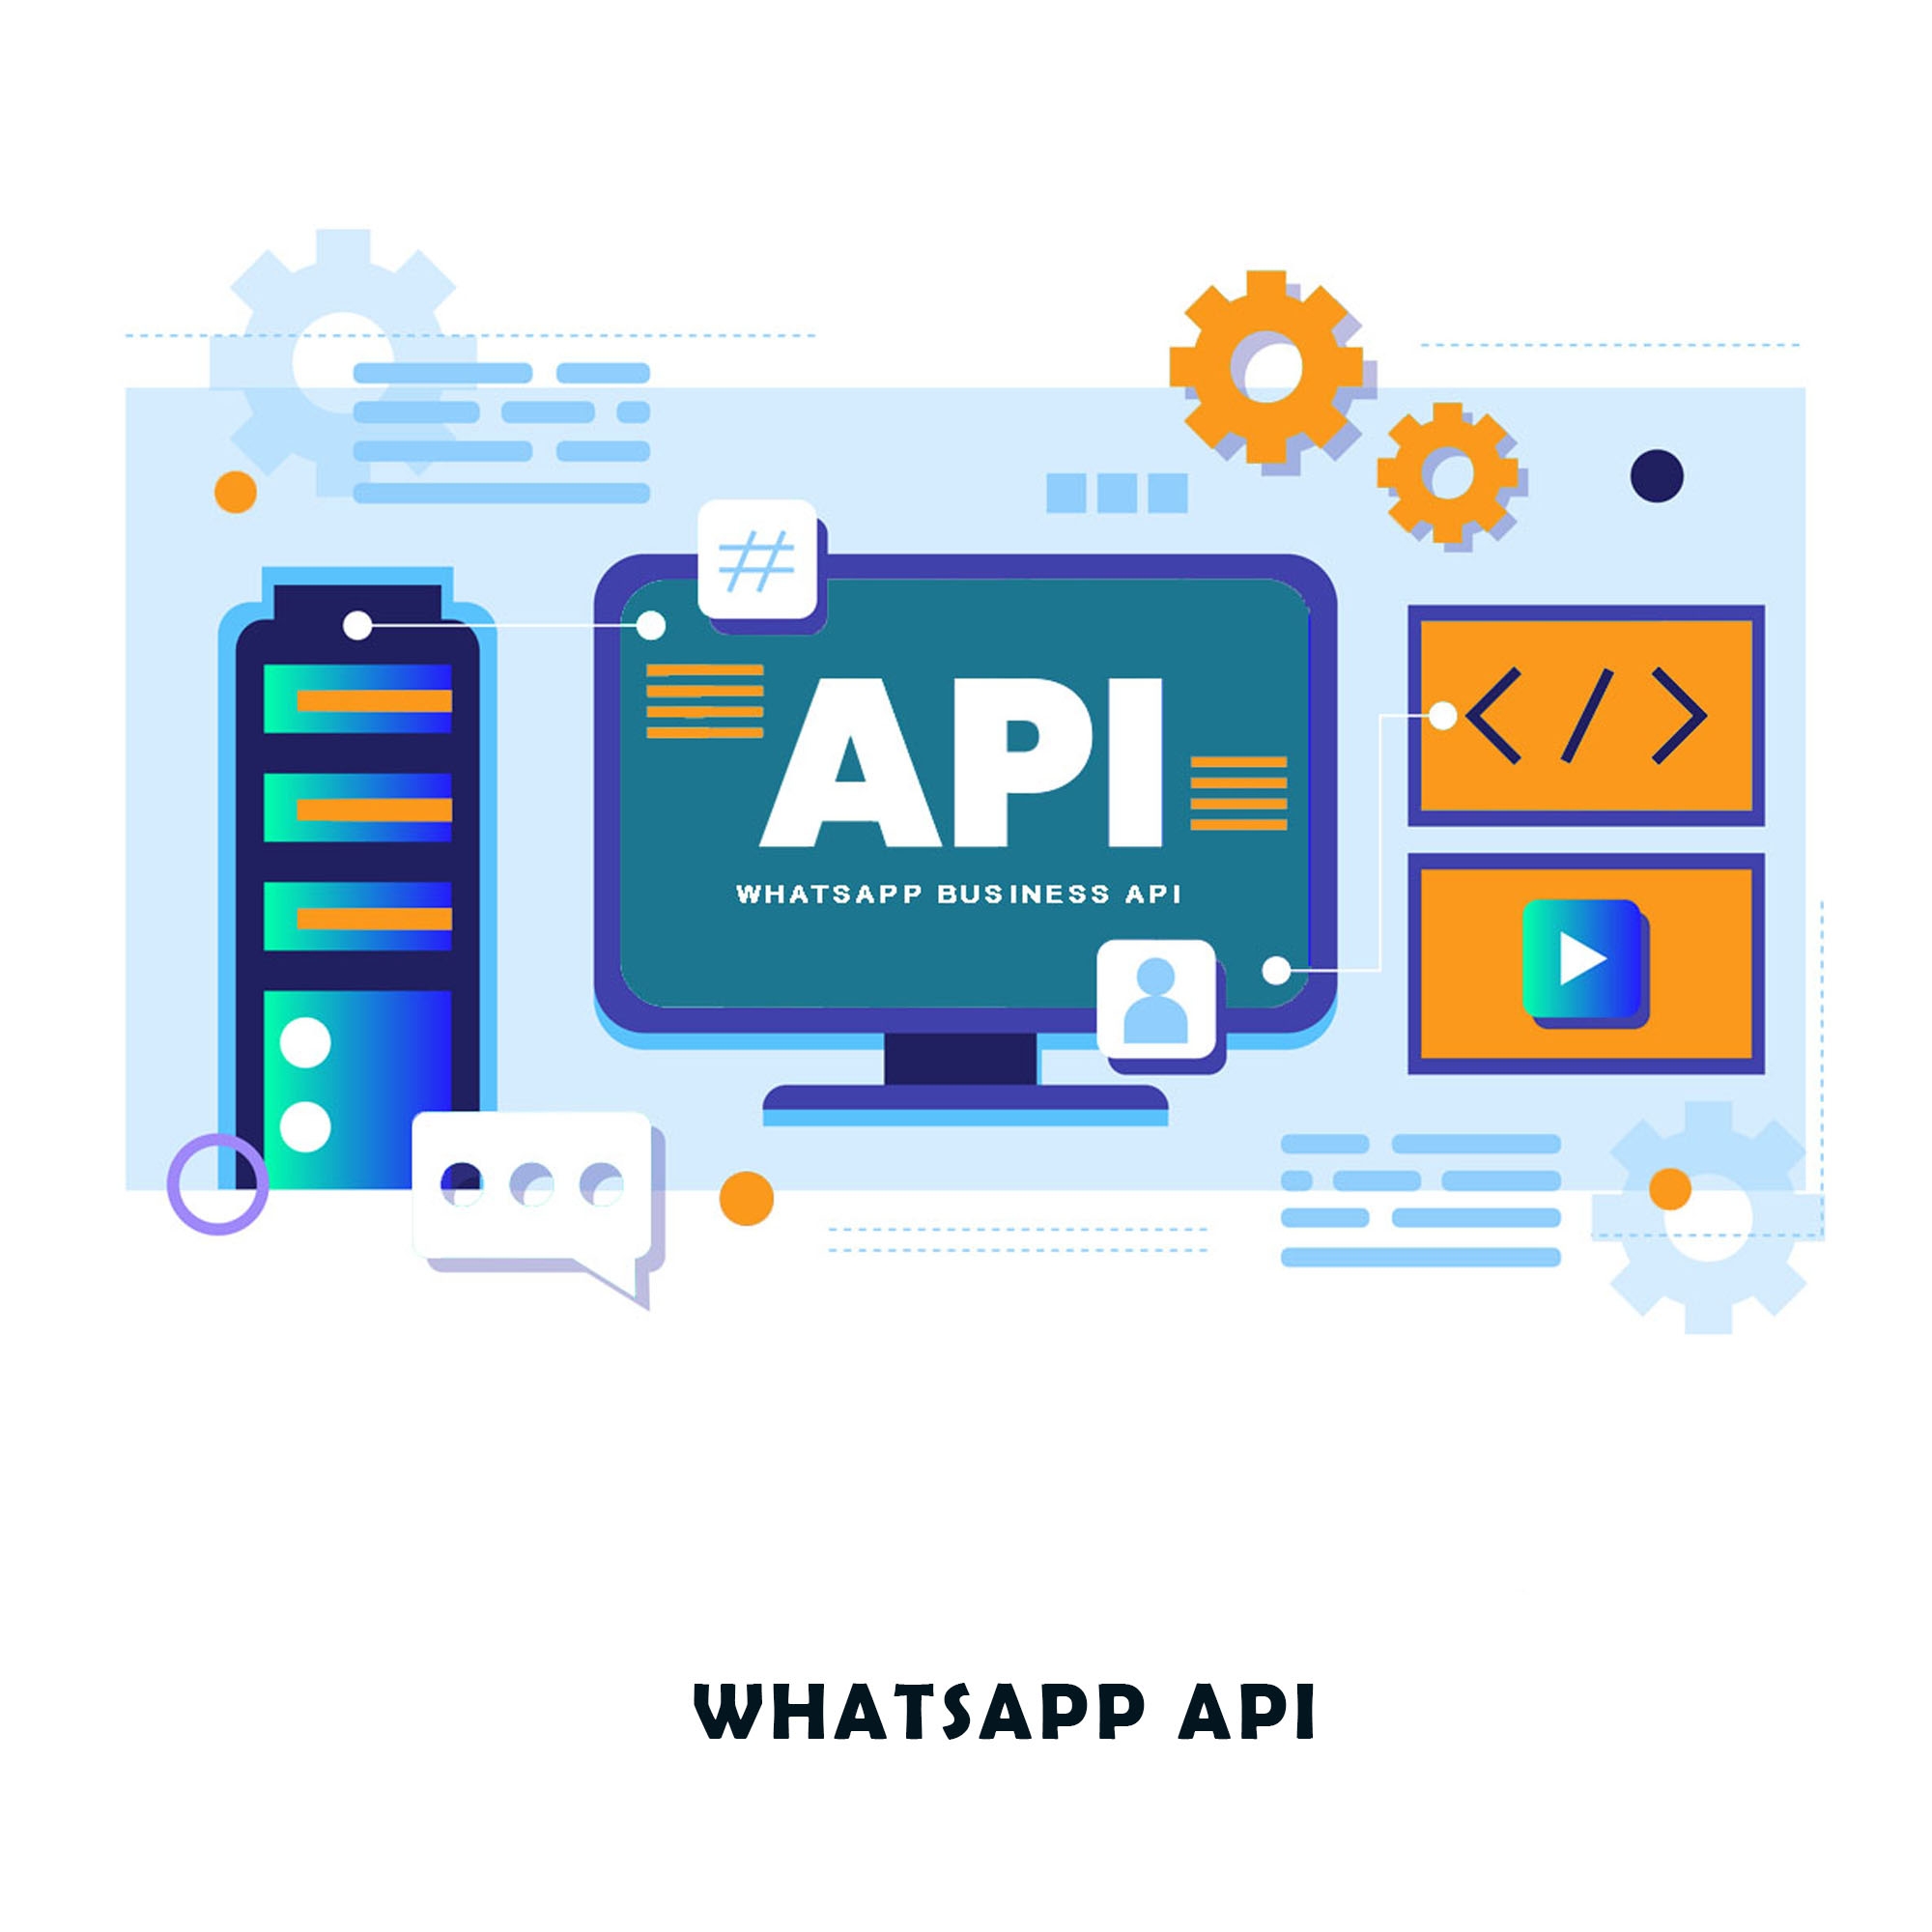 WHATSAPP API